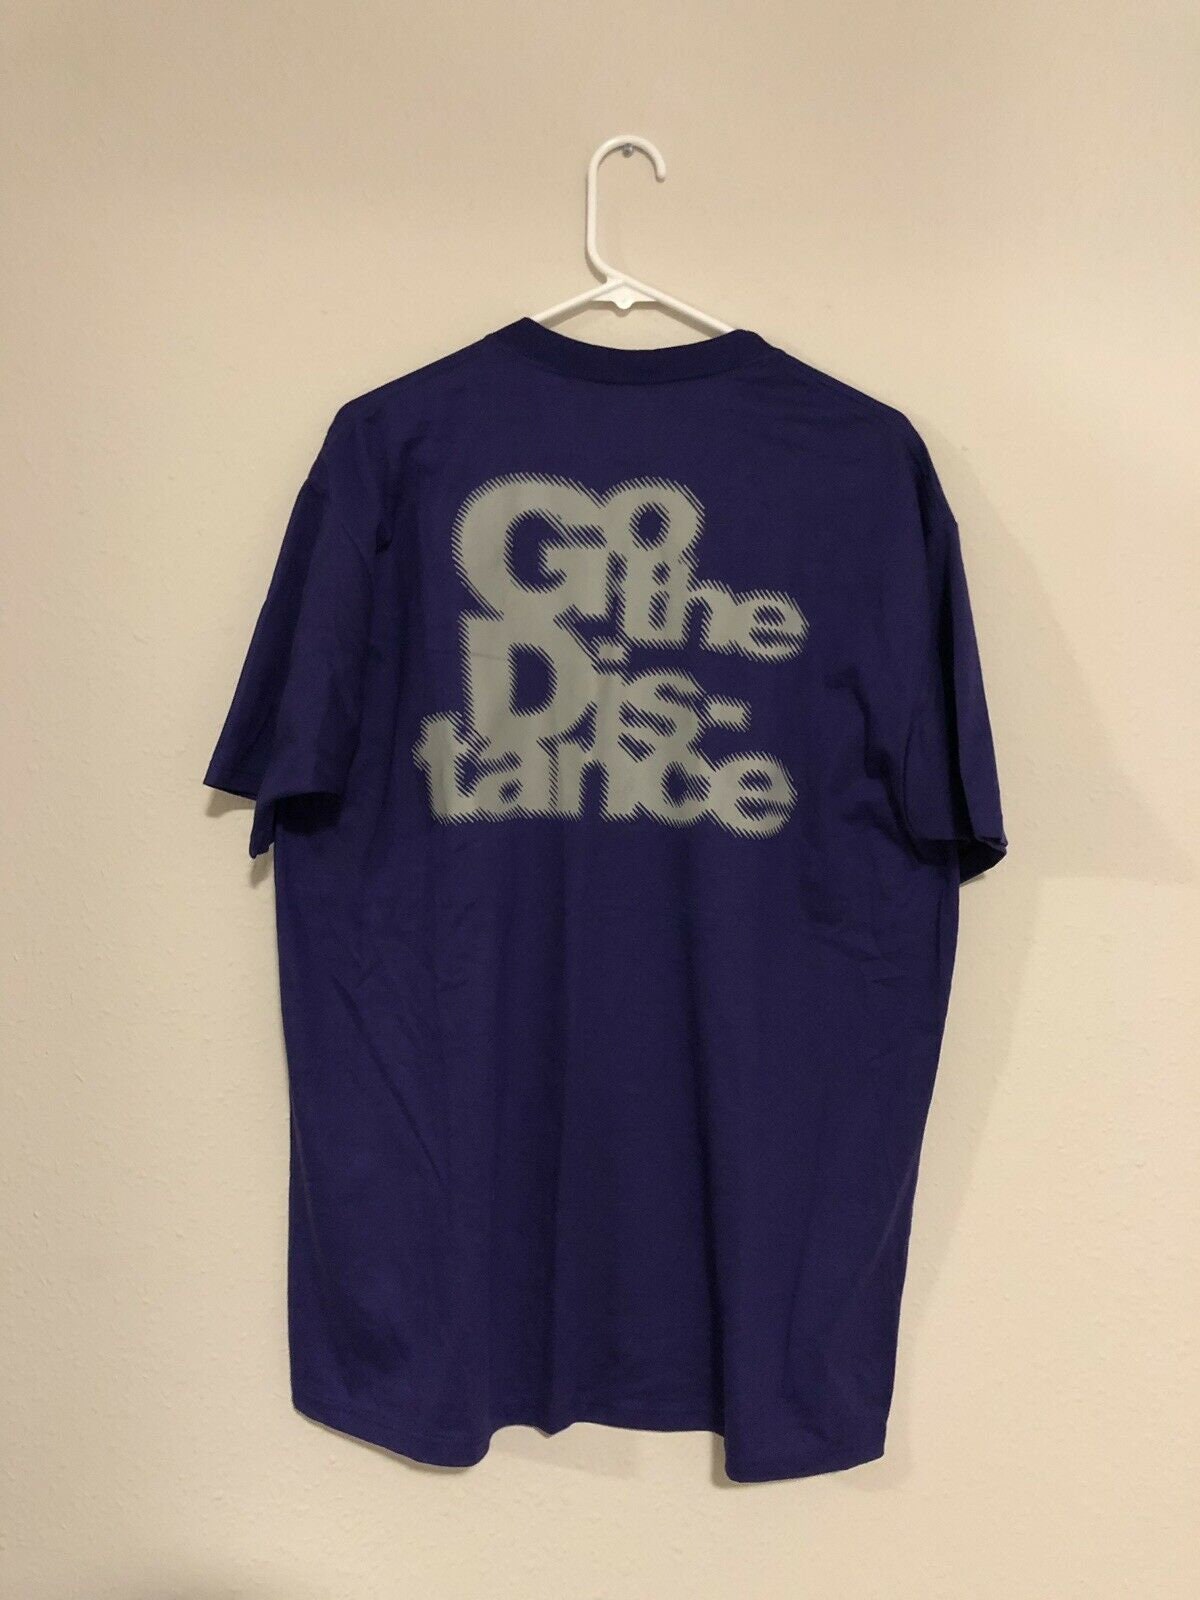 Mellem Trænge ind forfatter 1996 Vintage T-shirt go the Distance Motion Blur Graphic - Etsy